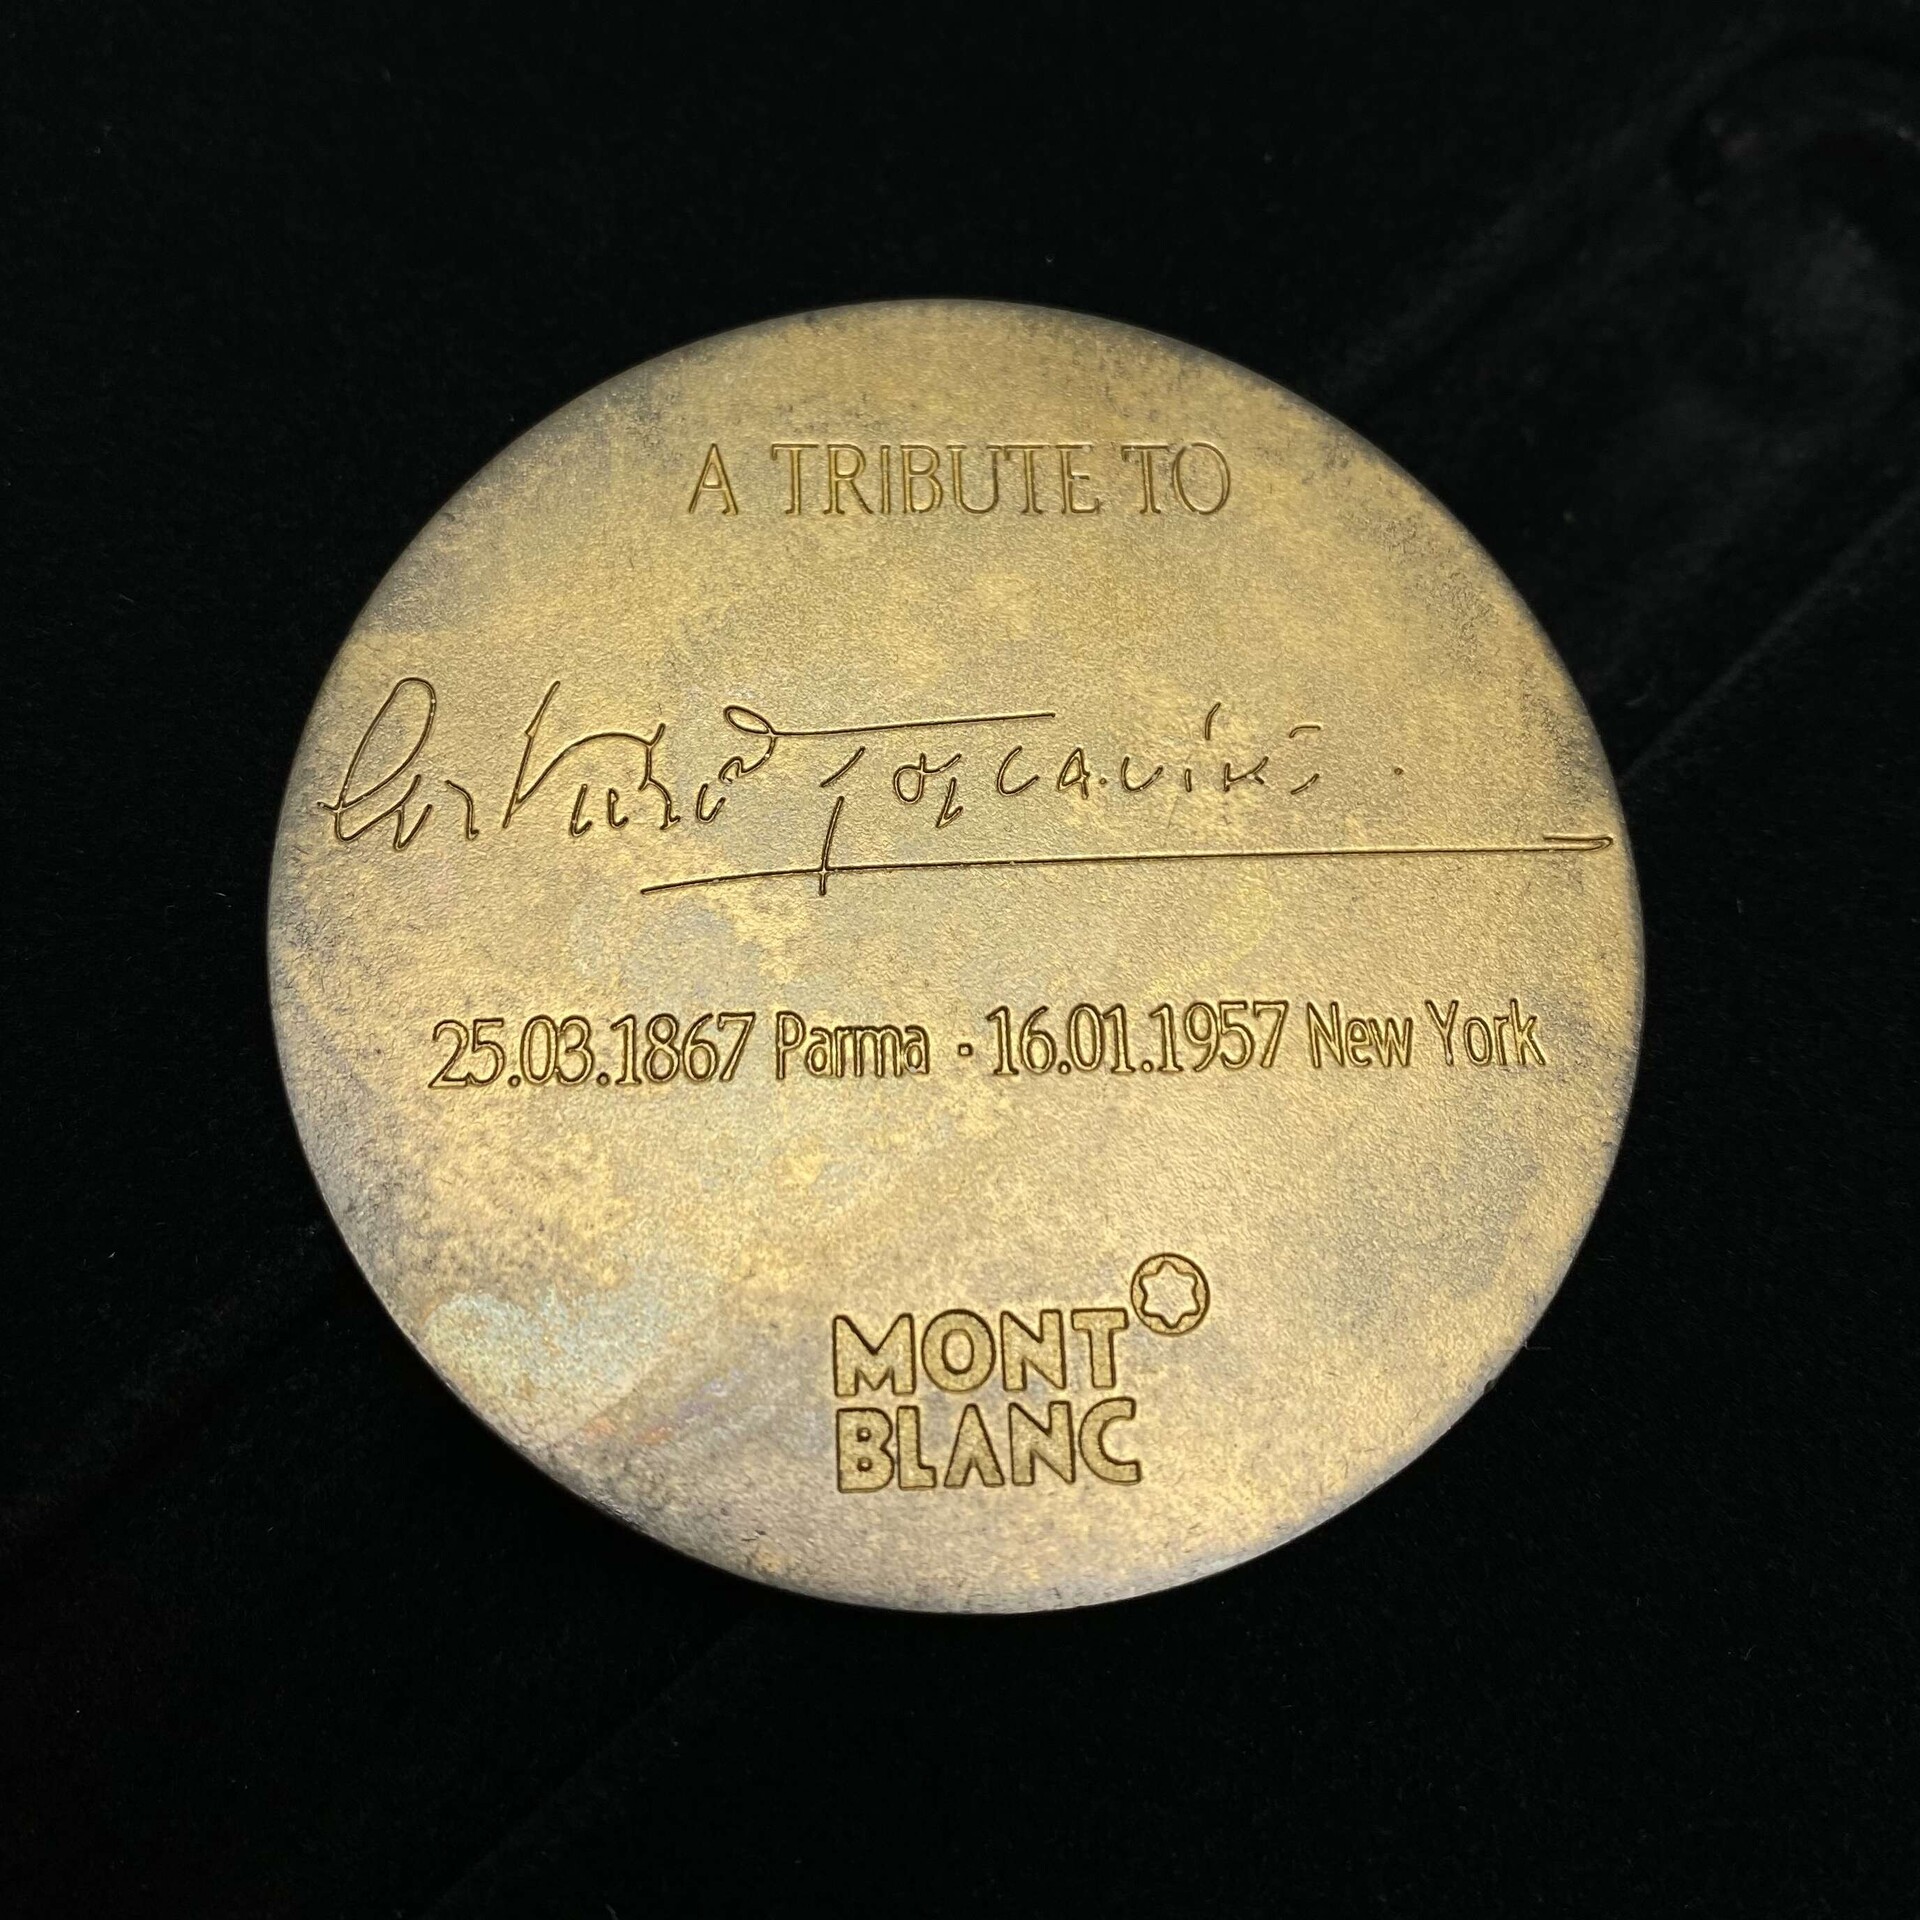 Caneta Montblanc Edição Especial Arturo Toscanini